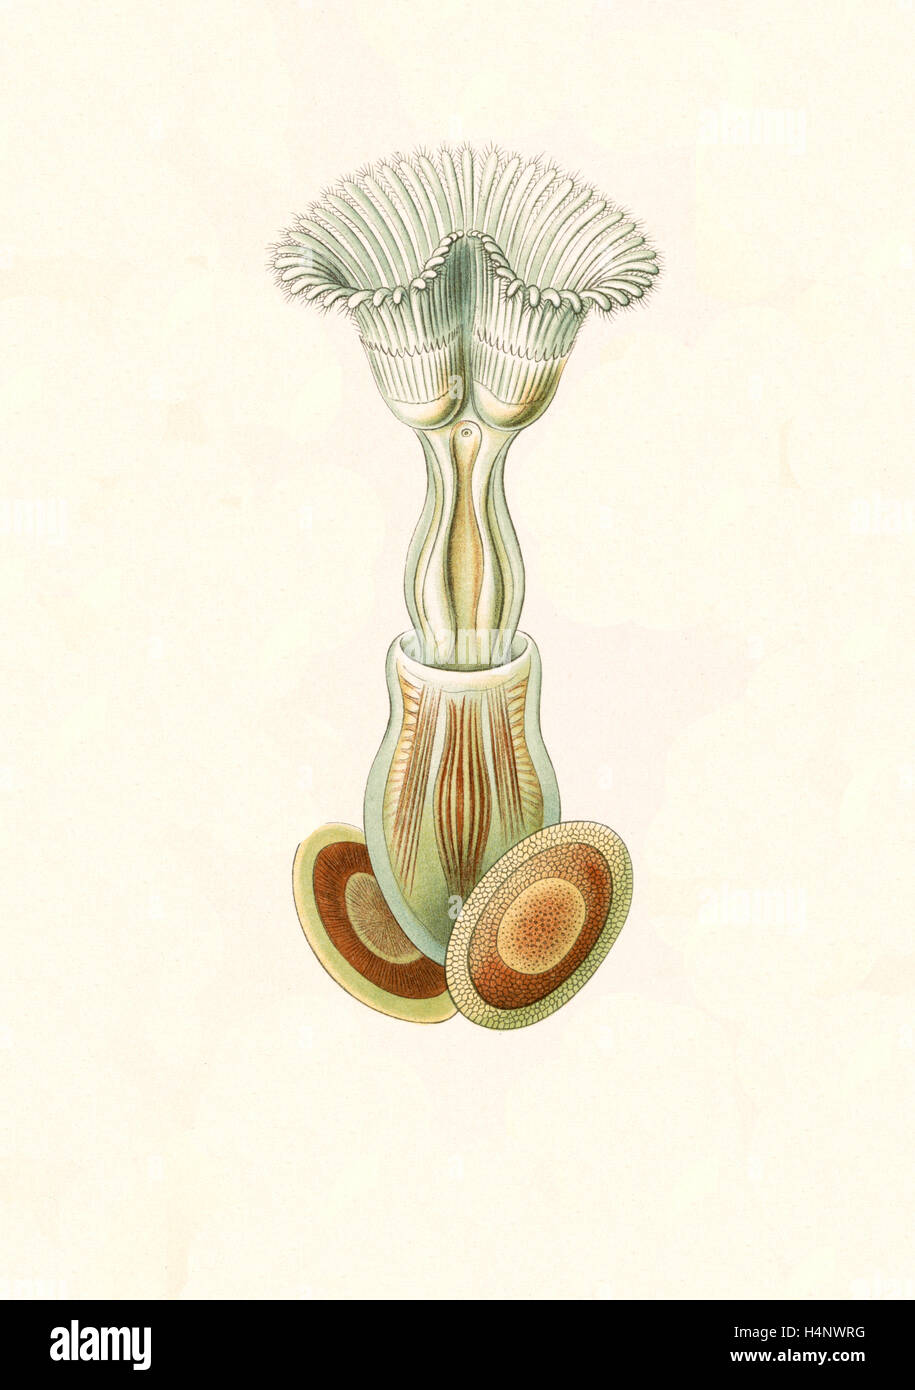 La figura mostra gli invertebrati acquatici. Briozoi. - Moostiere, 1 stampa : Litografia a colori ; foglio 36 x 26 cm., 1904. Foto Stock